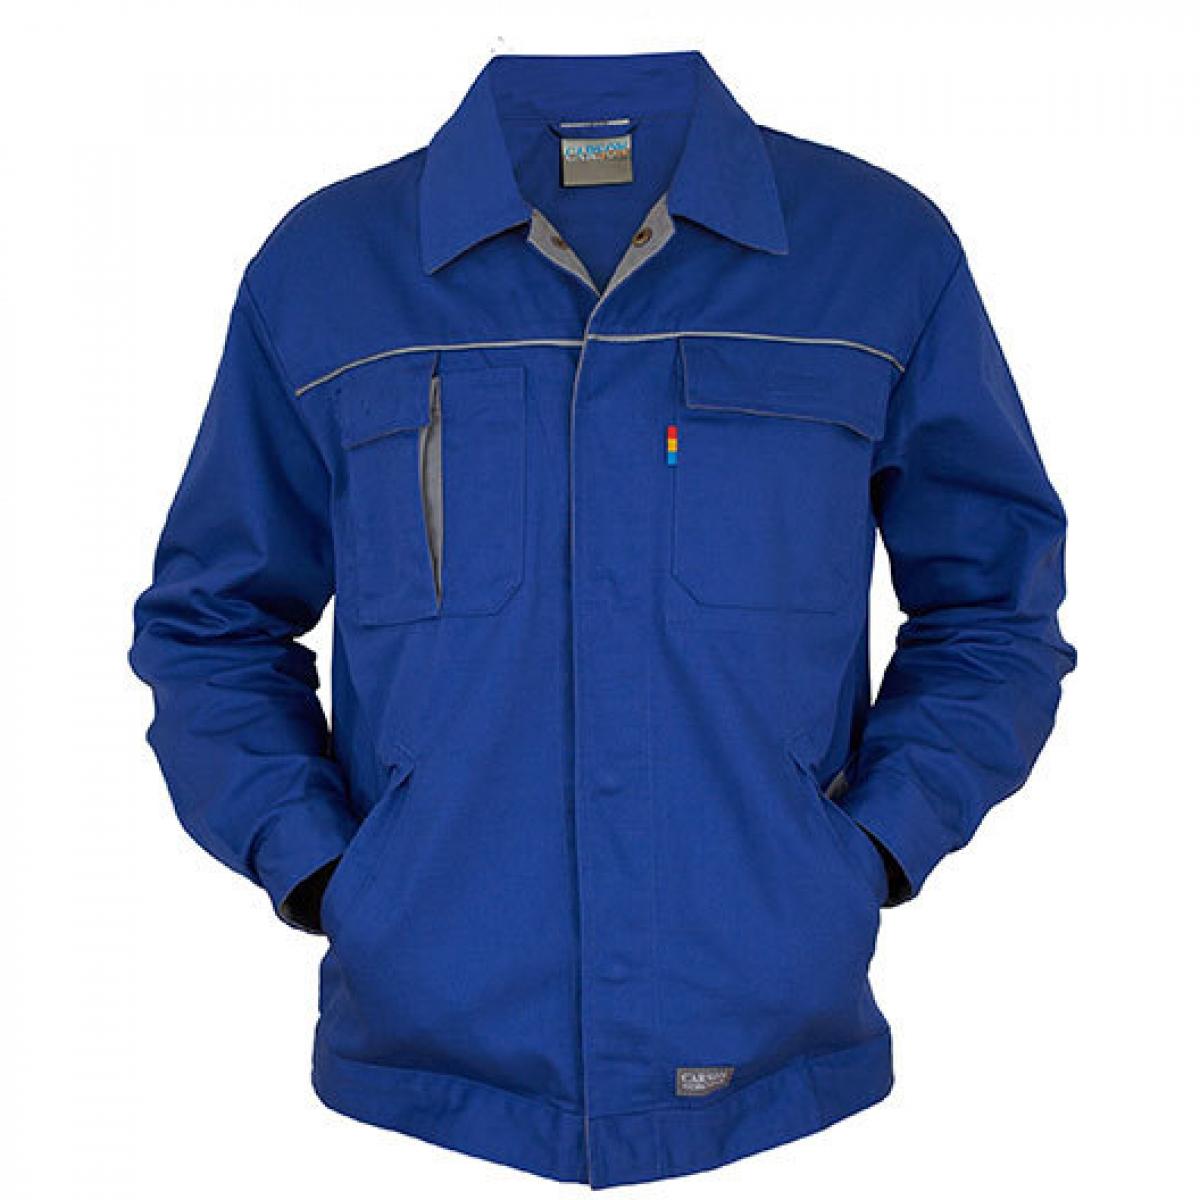 Hersteller: Carson Contrast Herstellernummer: CC710 Artikelbezeichnung: Herren Contrast Work Jacket / Bei 60 Grad waschbar Farbe: Royal/Grey